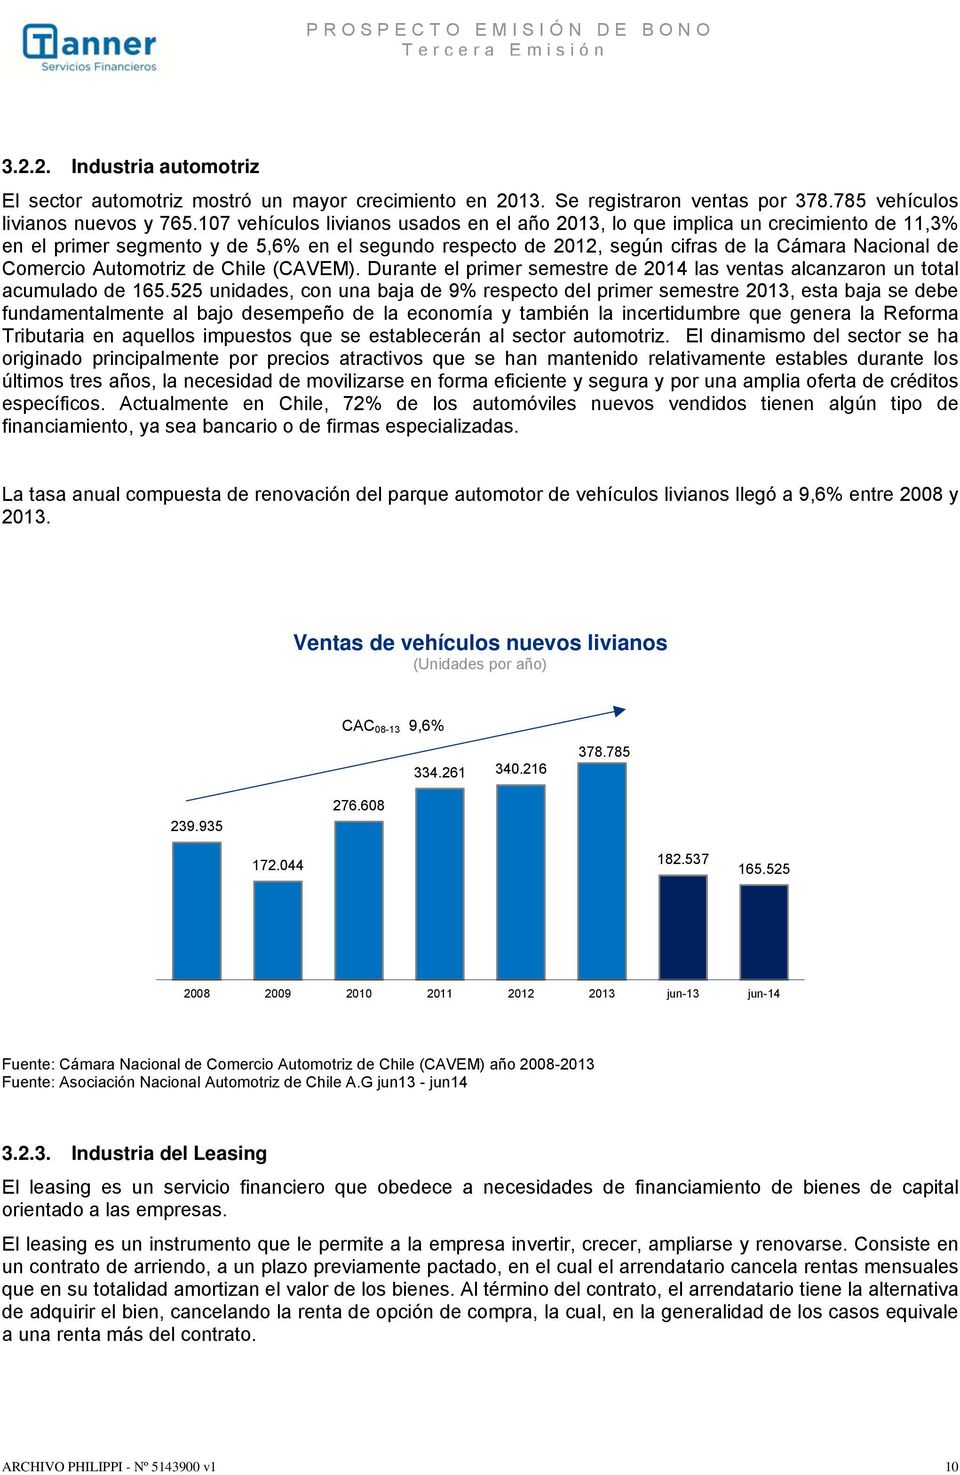 Automotriz de Chile (CAVEM). Durante el primer semestre de 2014 las ventas alcanzaron un total acumulado de 165.